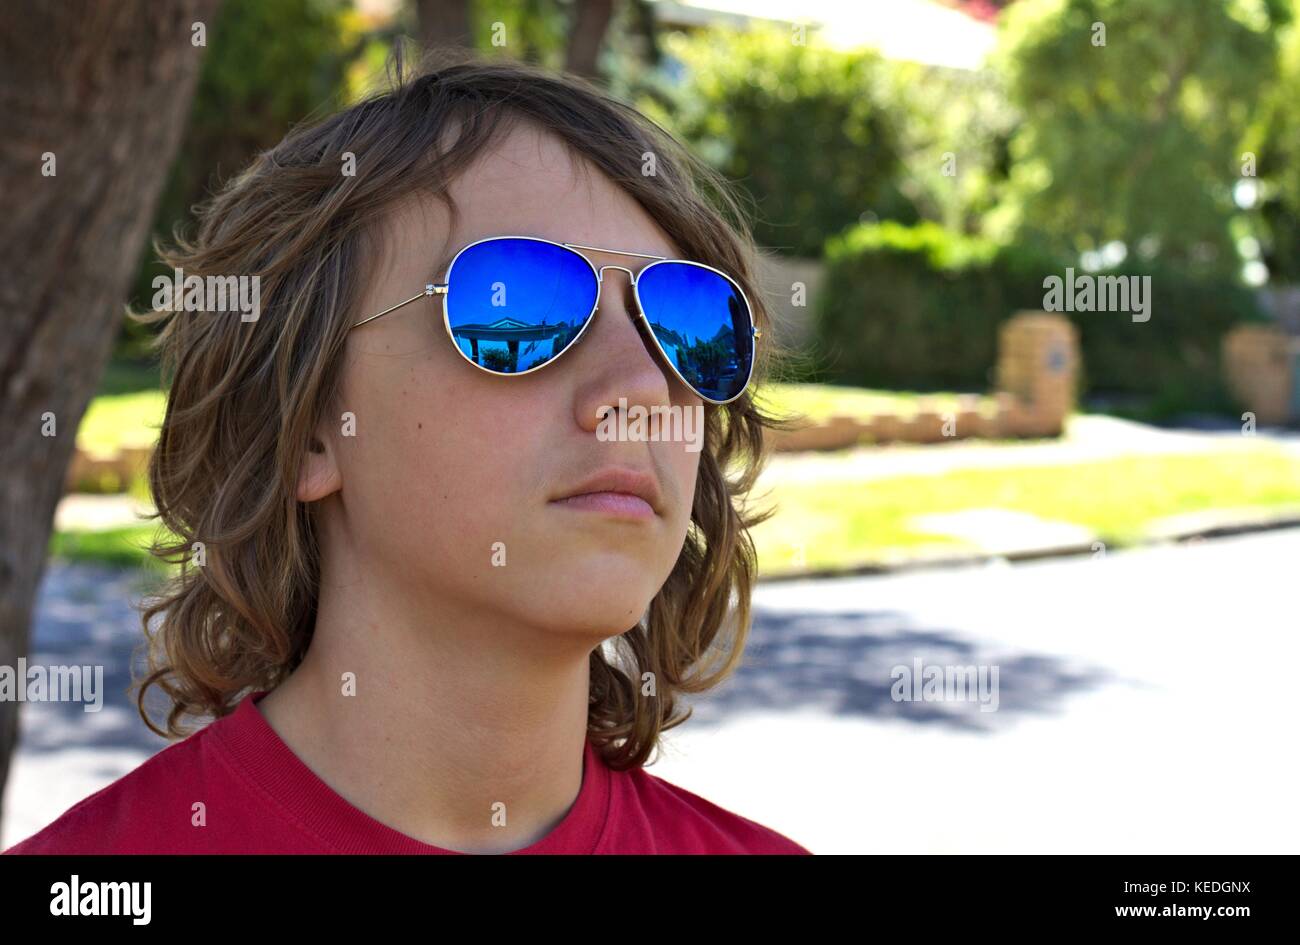 Junge Teenager männlichen trägt blaue Sonnenbrille Kopf gegen suburban Hintergrund gedreht. Stockfoto